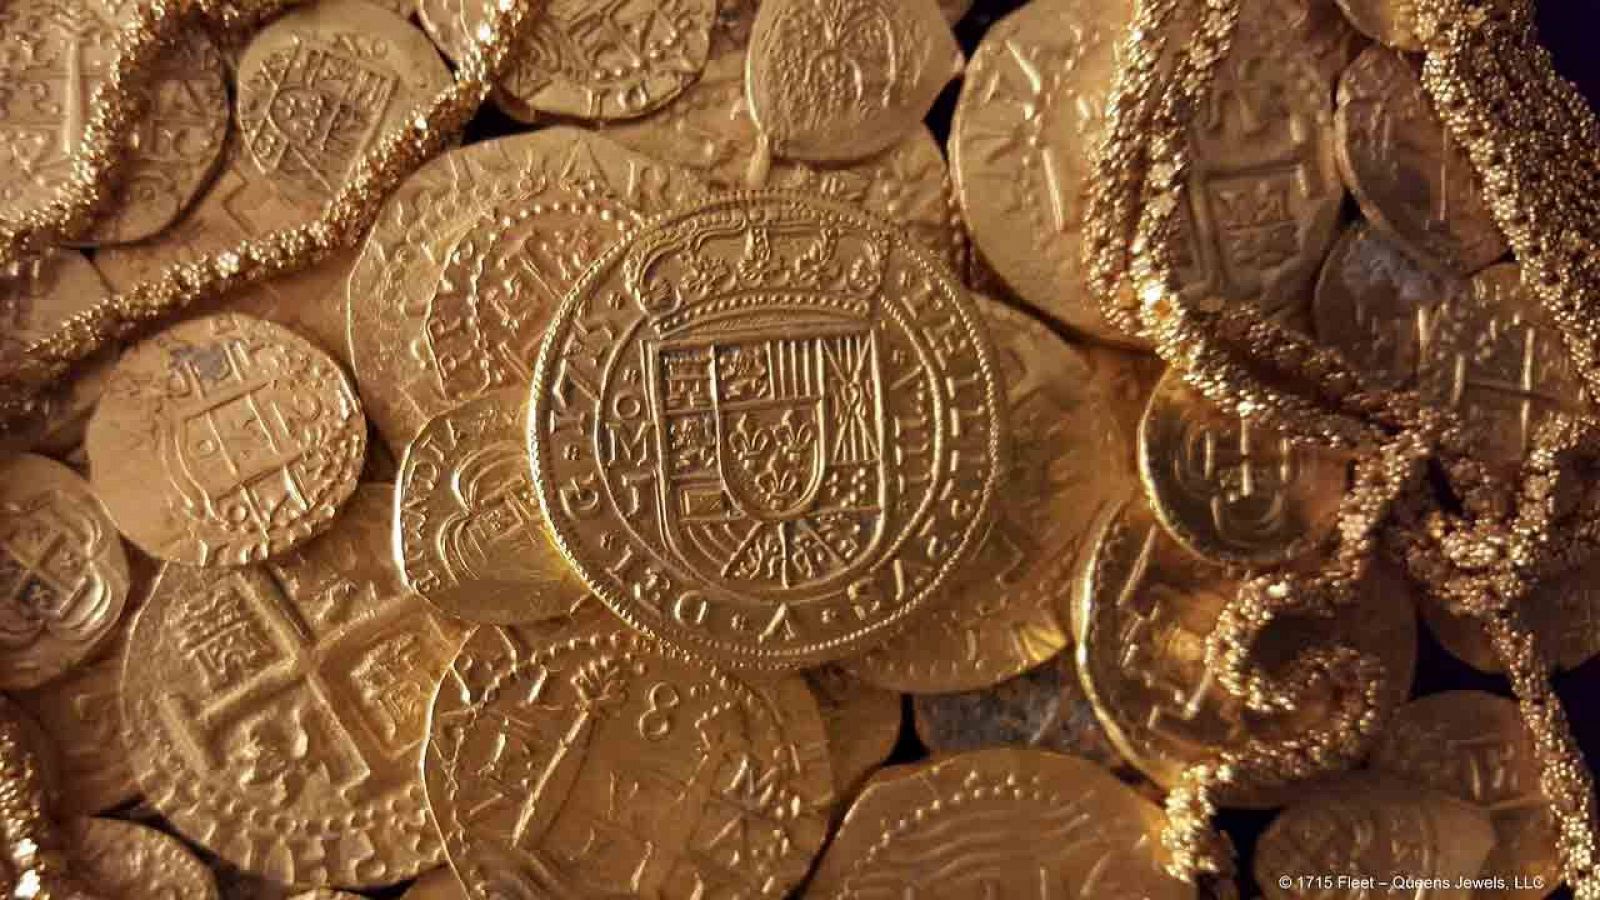 Vista de las monedas y el cordón de oro encontrado entre los restos del barco español hundido en 1715